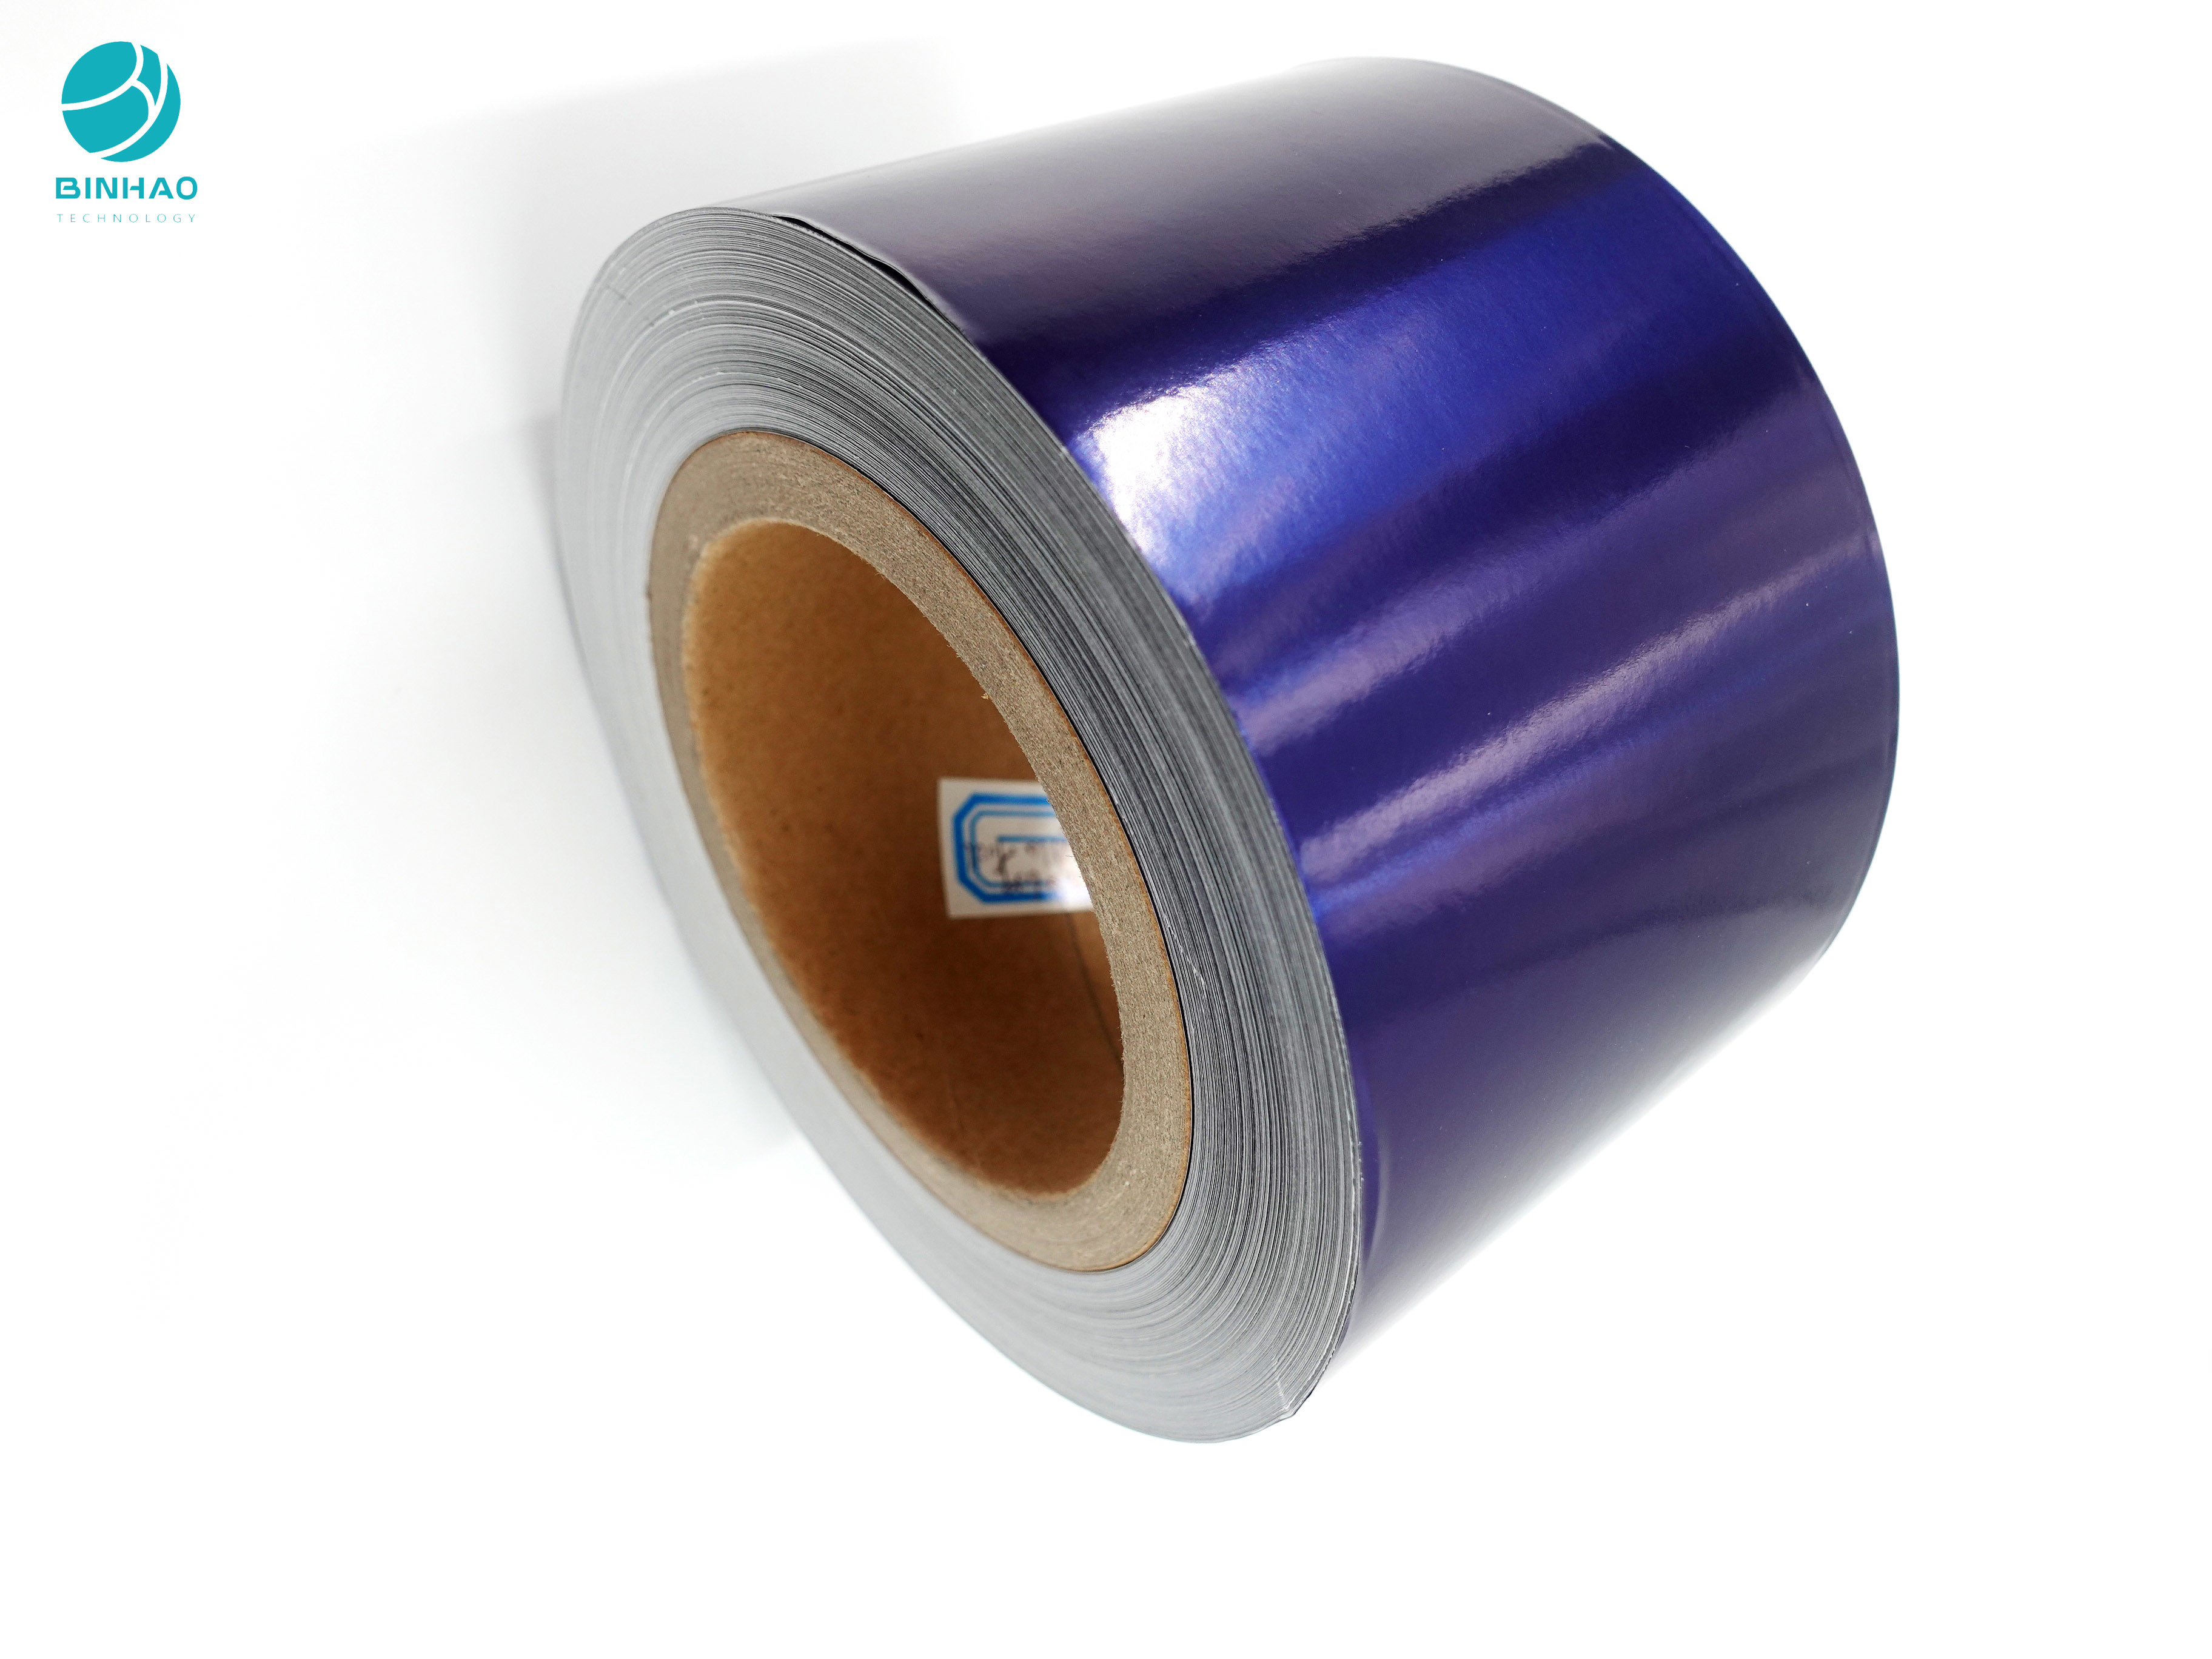 Бумага алюминиевой фольги короля Размера Сигареты Упаковки 1500M с пурпурным цветом